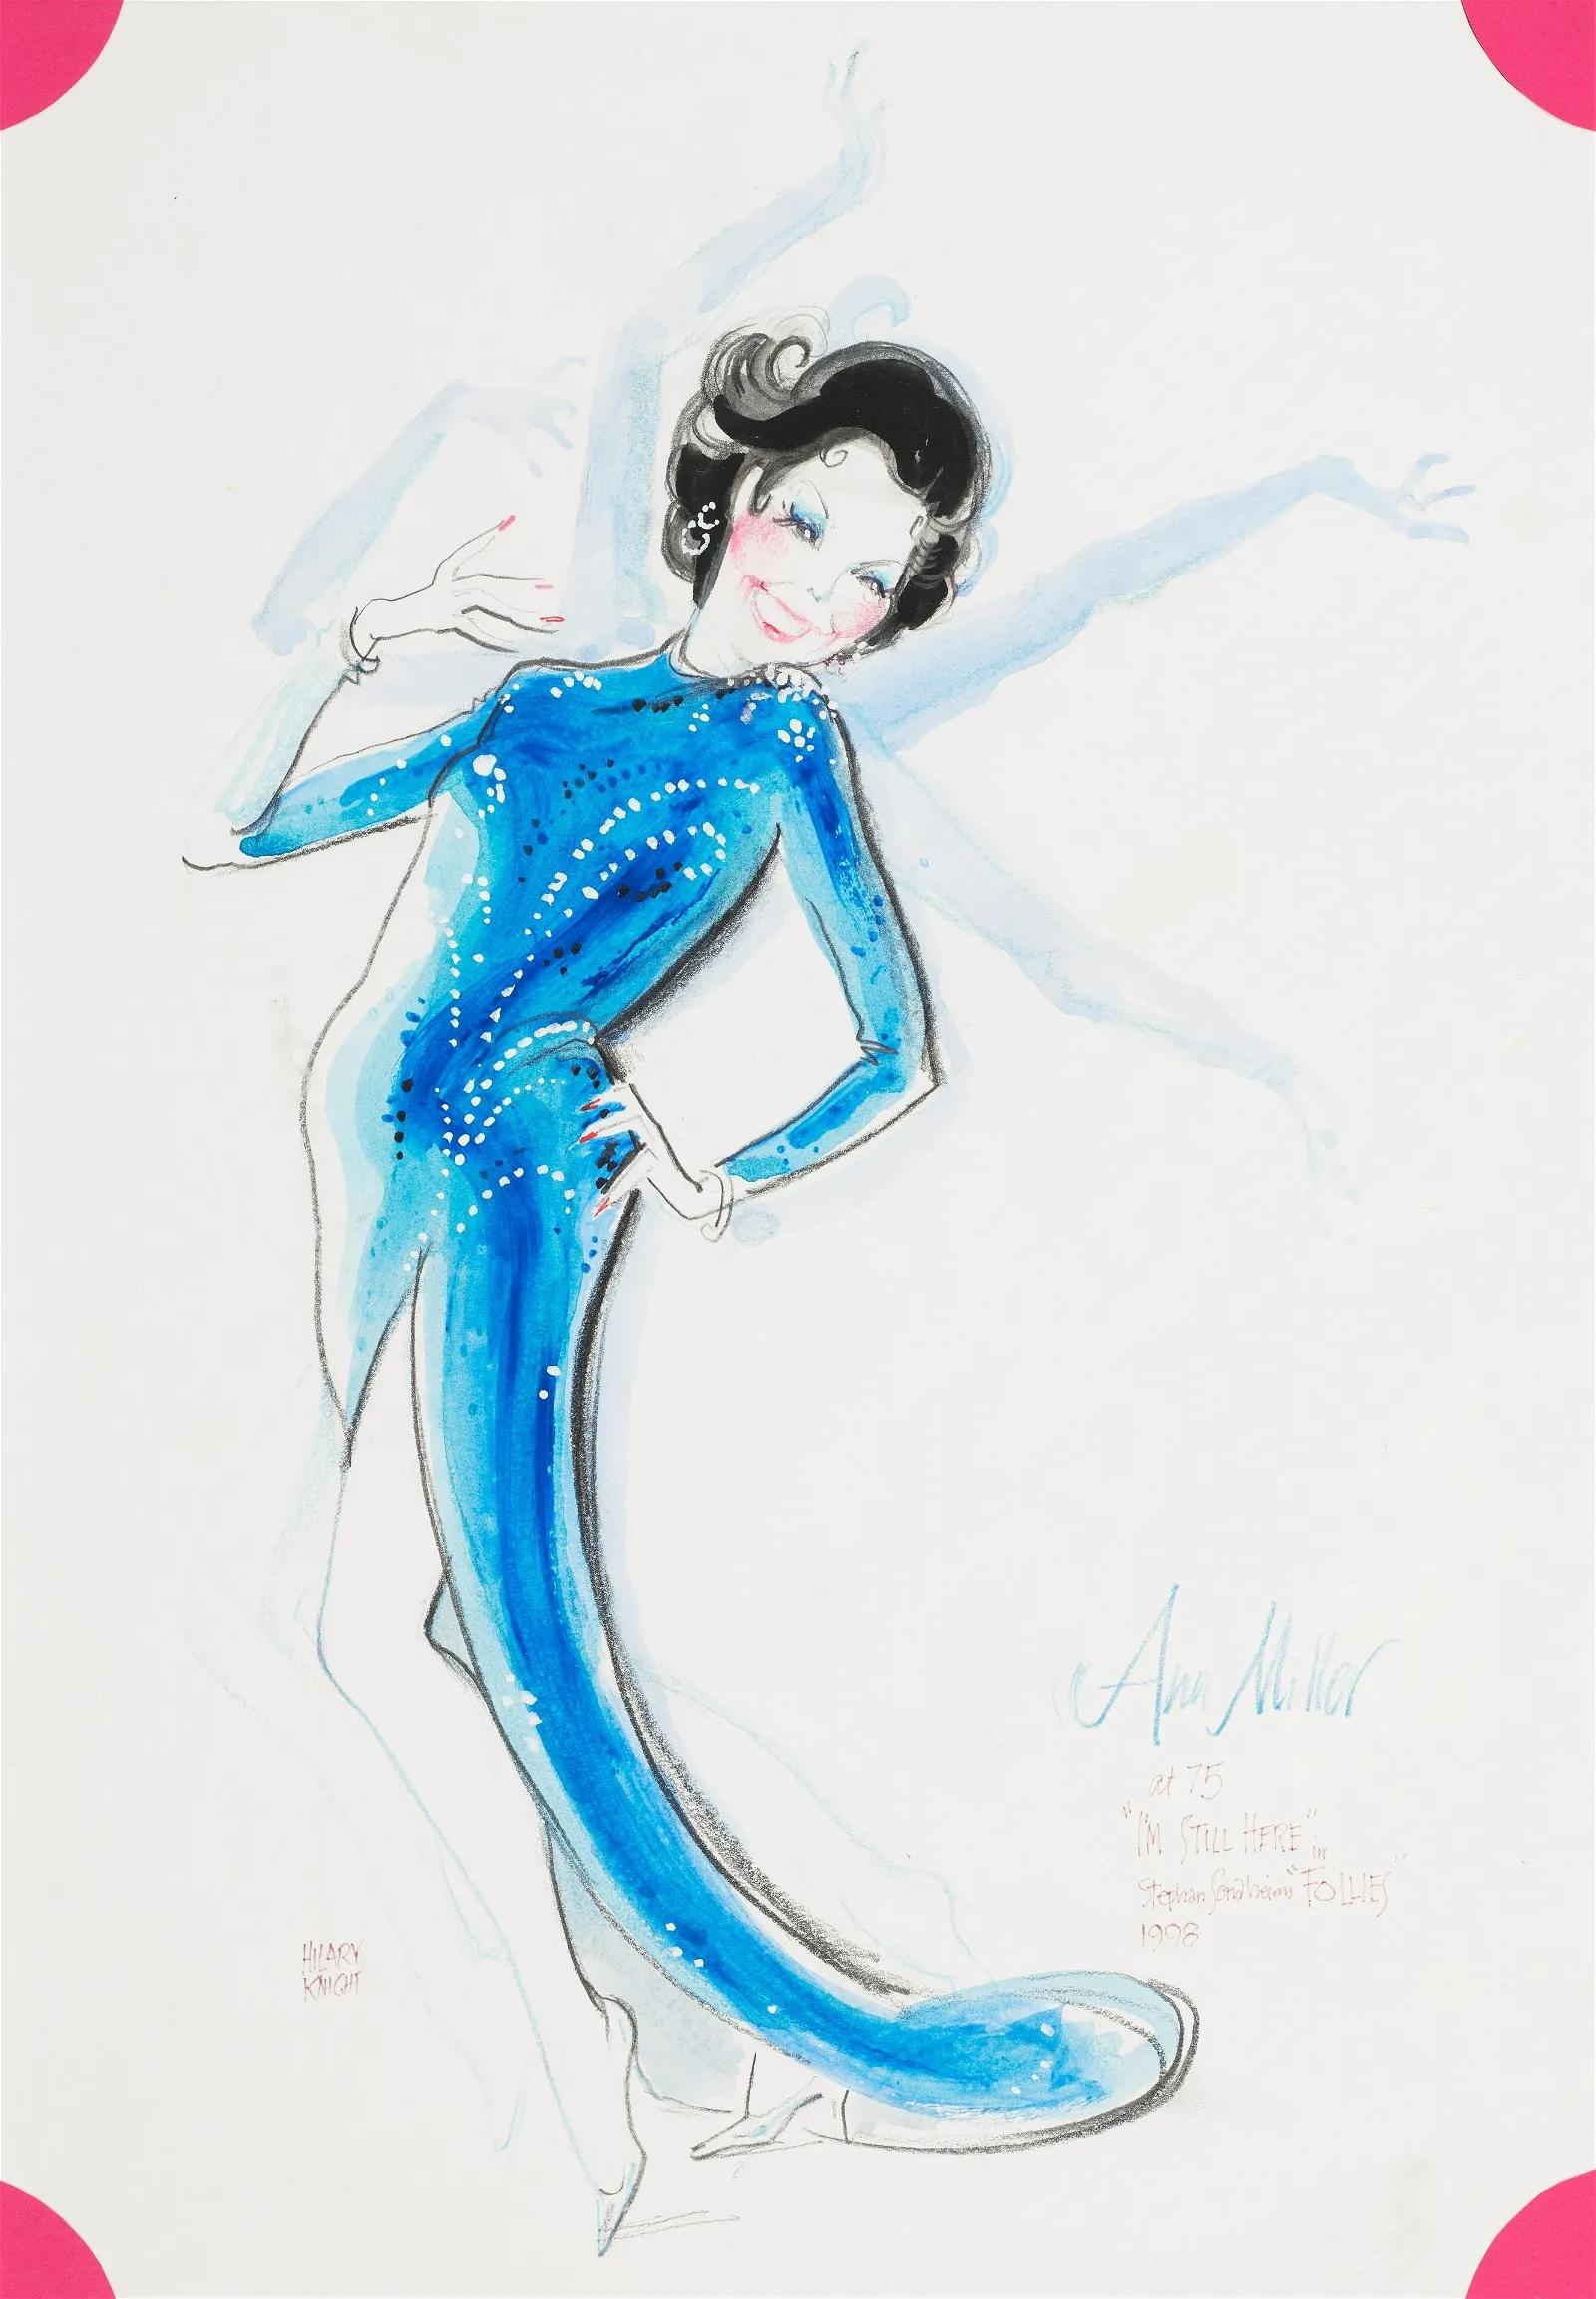 Ann Miller in Follies Broadway - Illustration de dessin musical contemporain d'Eloise - Mixed Media Art de Hilary Knight